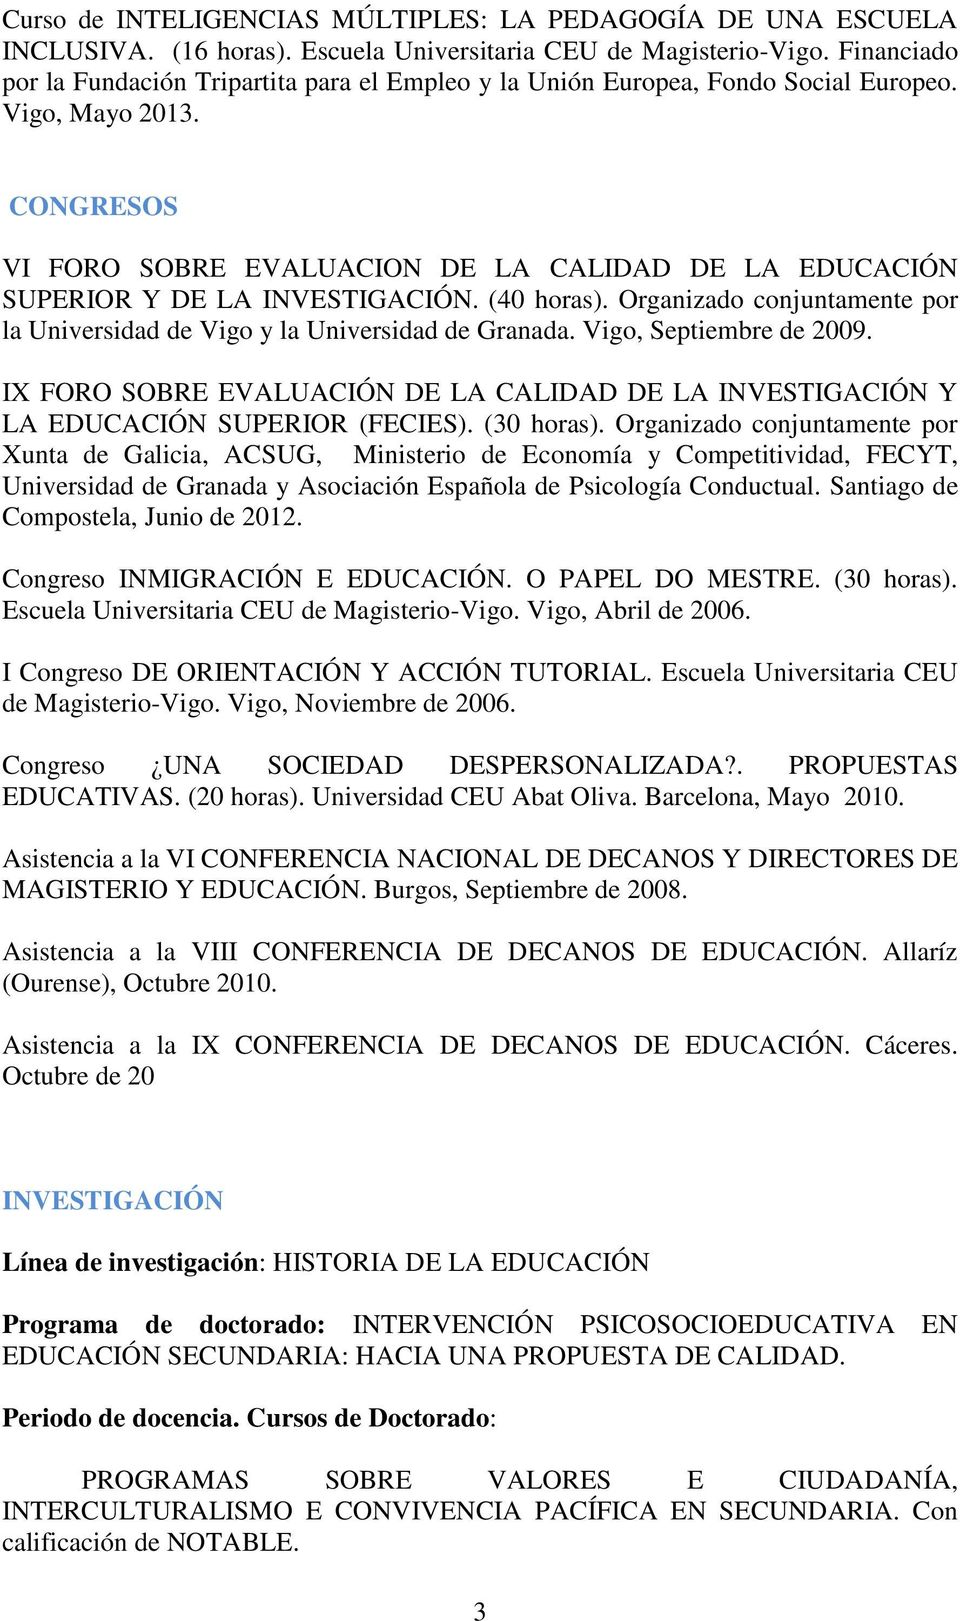 CONGRESOS VI FORO SOBRE EVALUACION DE LA CALIDAD DE LA EDUCACIÓN SUPERIOR Y DE LA INVESTIGACIÓN. (40 horas). Organizado conjuntamente por la Universidad de Vigo y la Universidad de Granada.